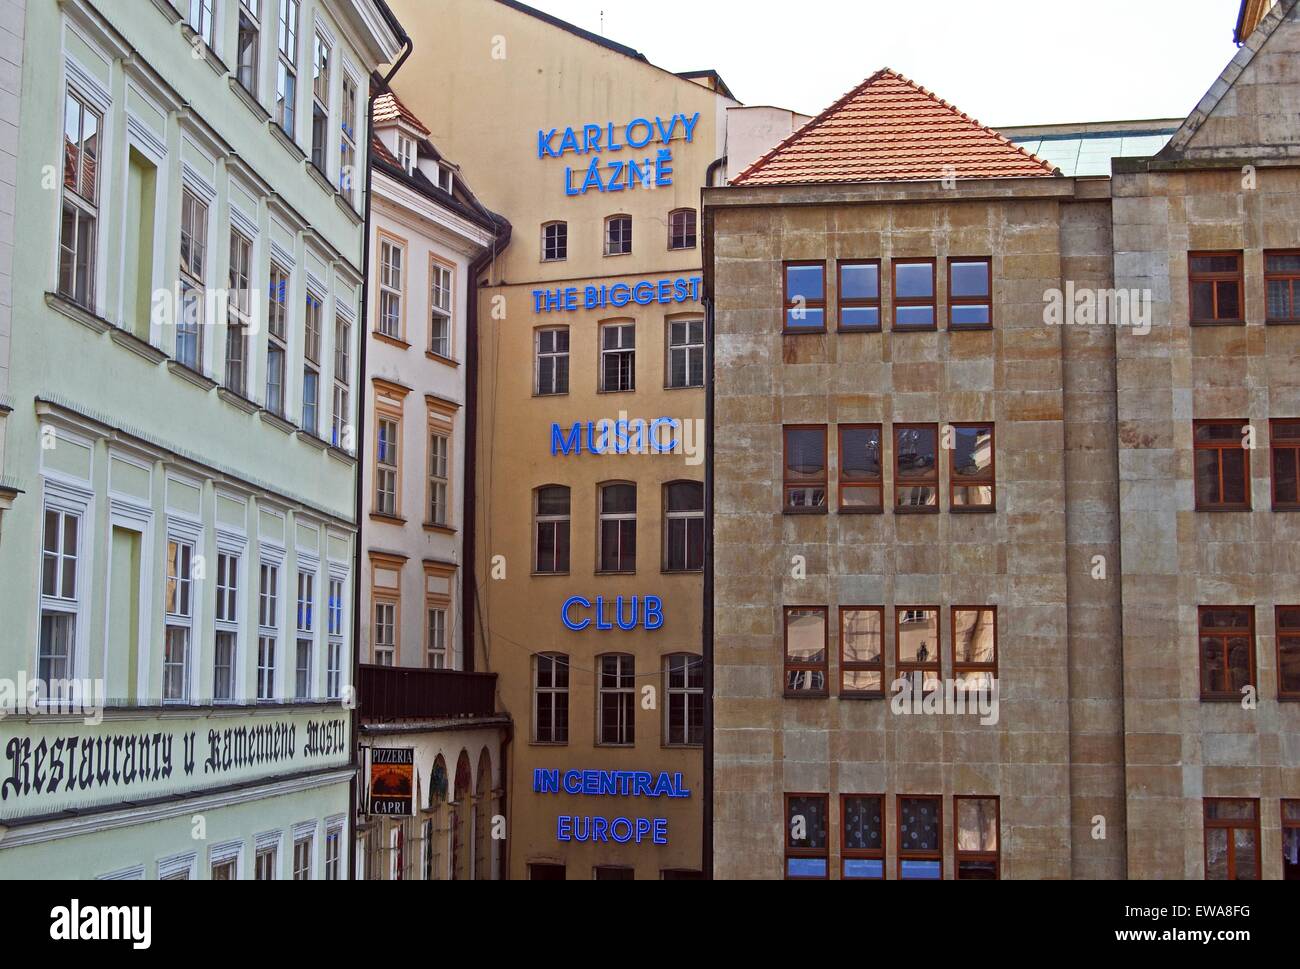 Plus grand club de musique en Europe centrale (Karlovy Lazne), Prague, République Tchèque, Europe de l'Est. Banque D'Images